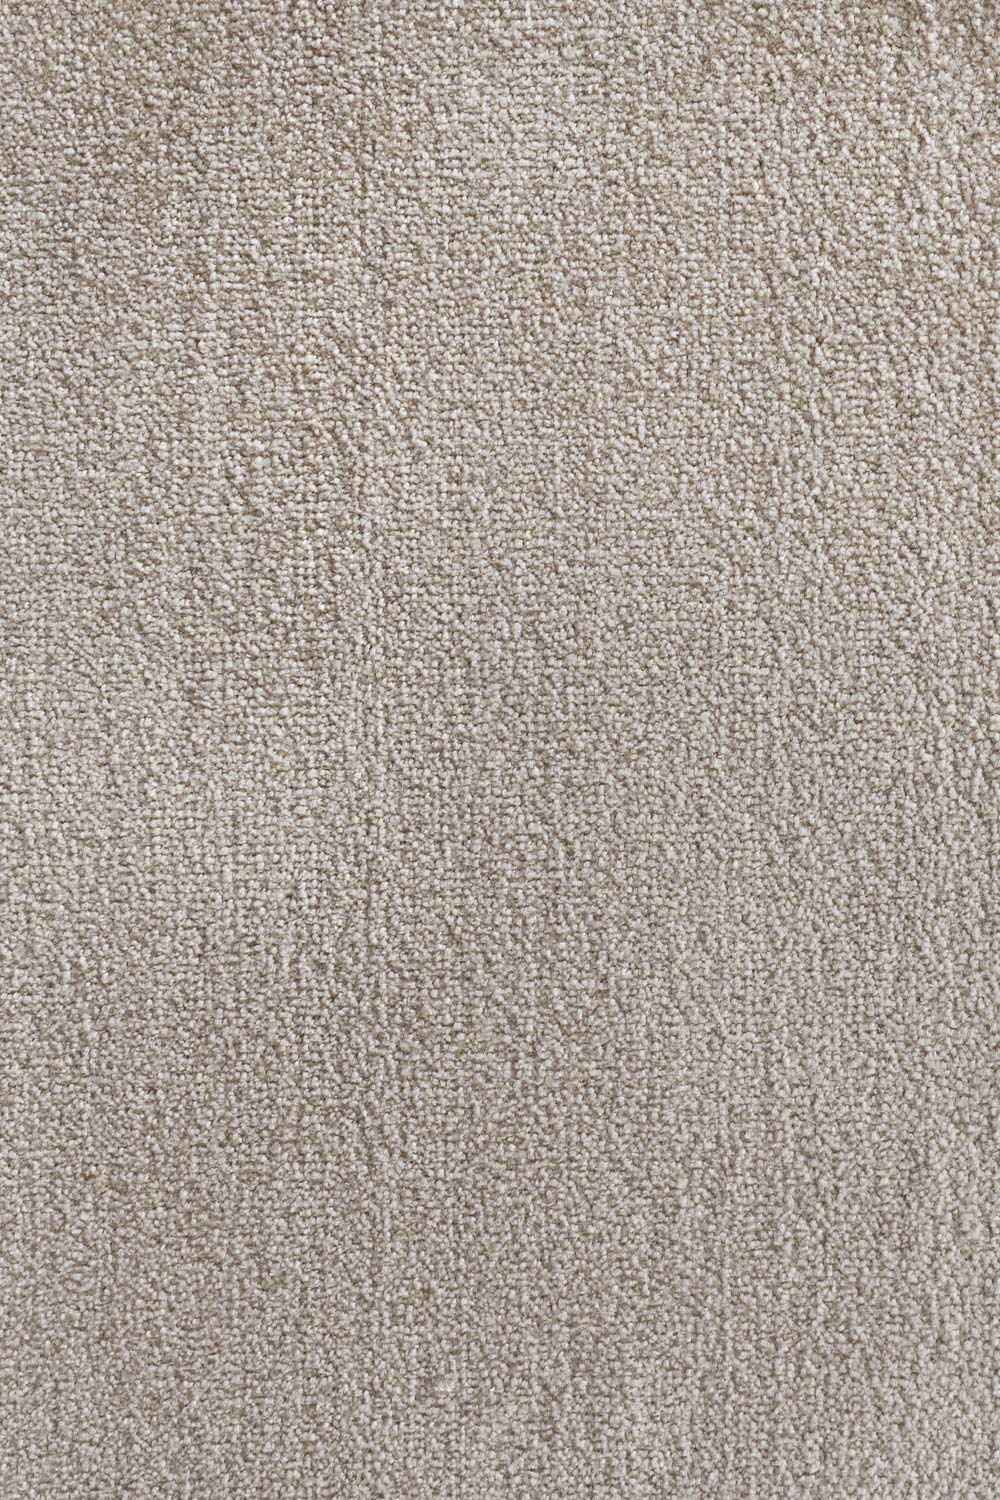 Metrážny koberec Godiva 334 - Zvyšok 194x400 cm